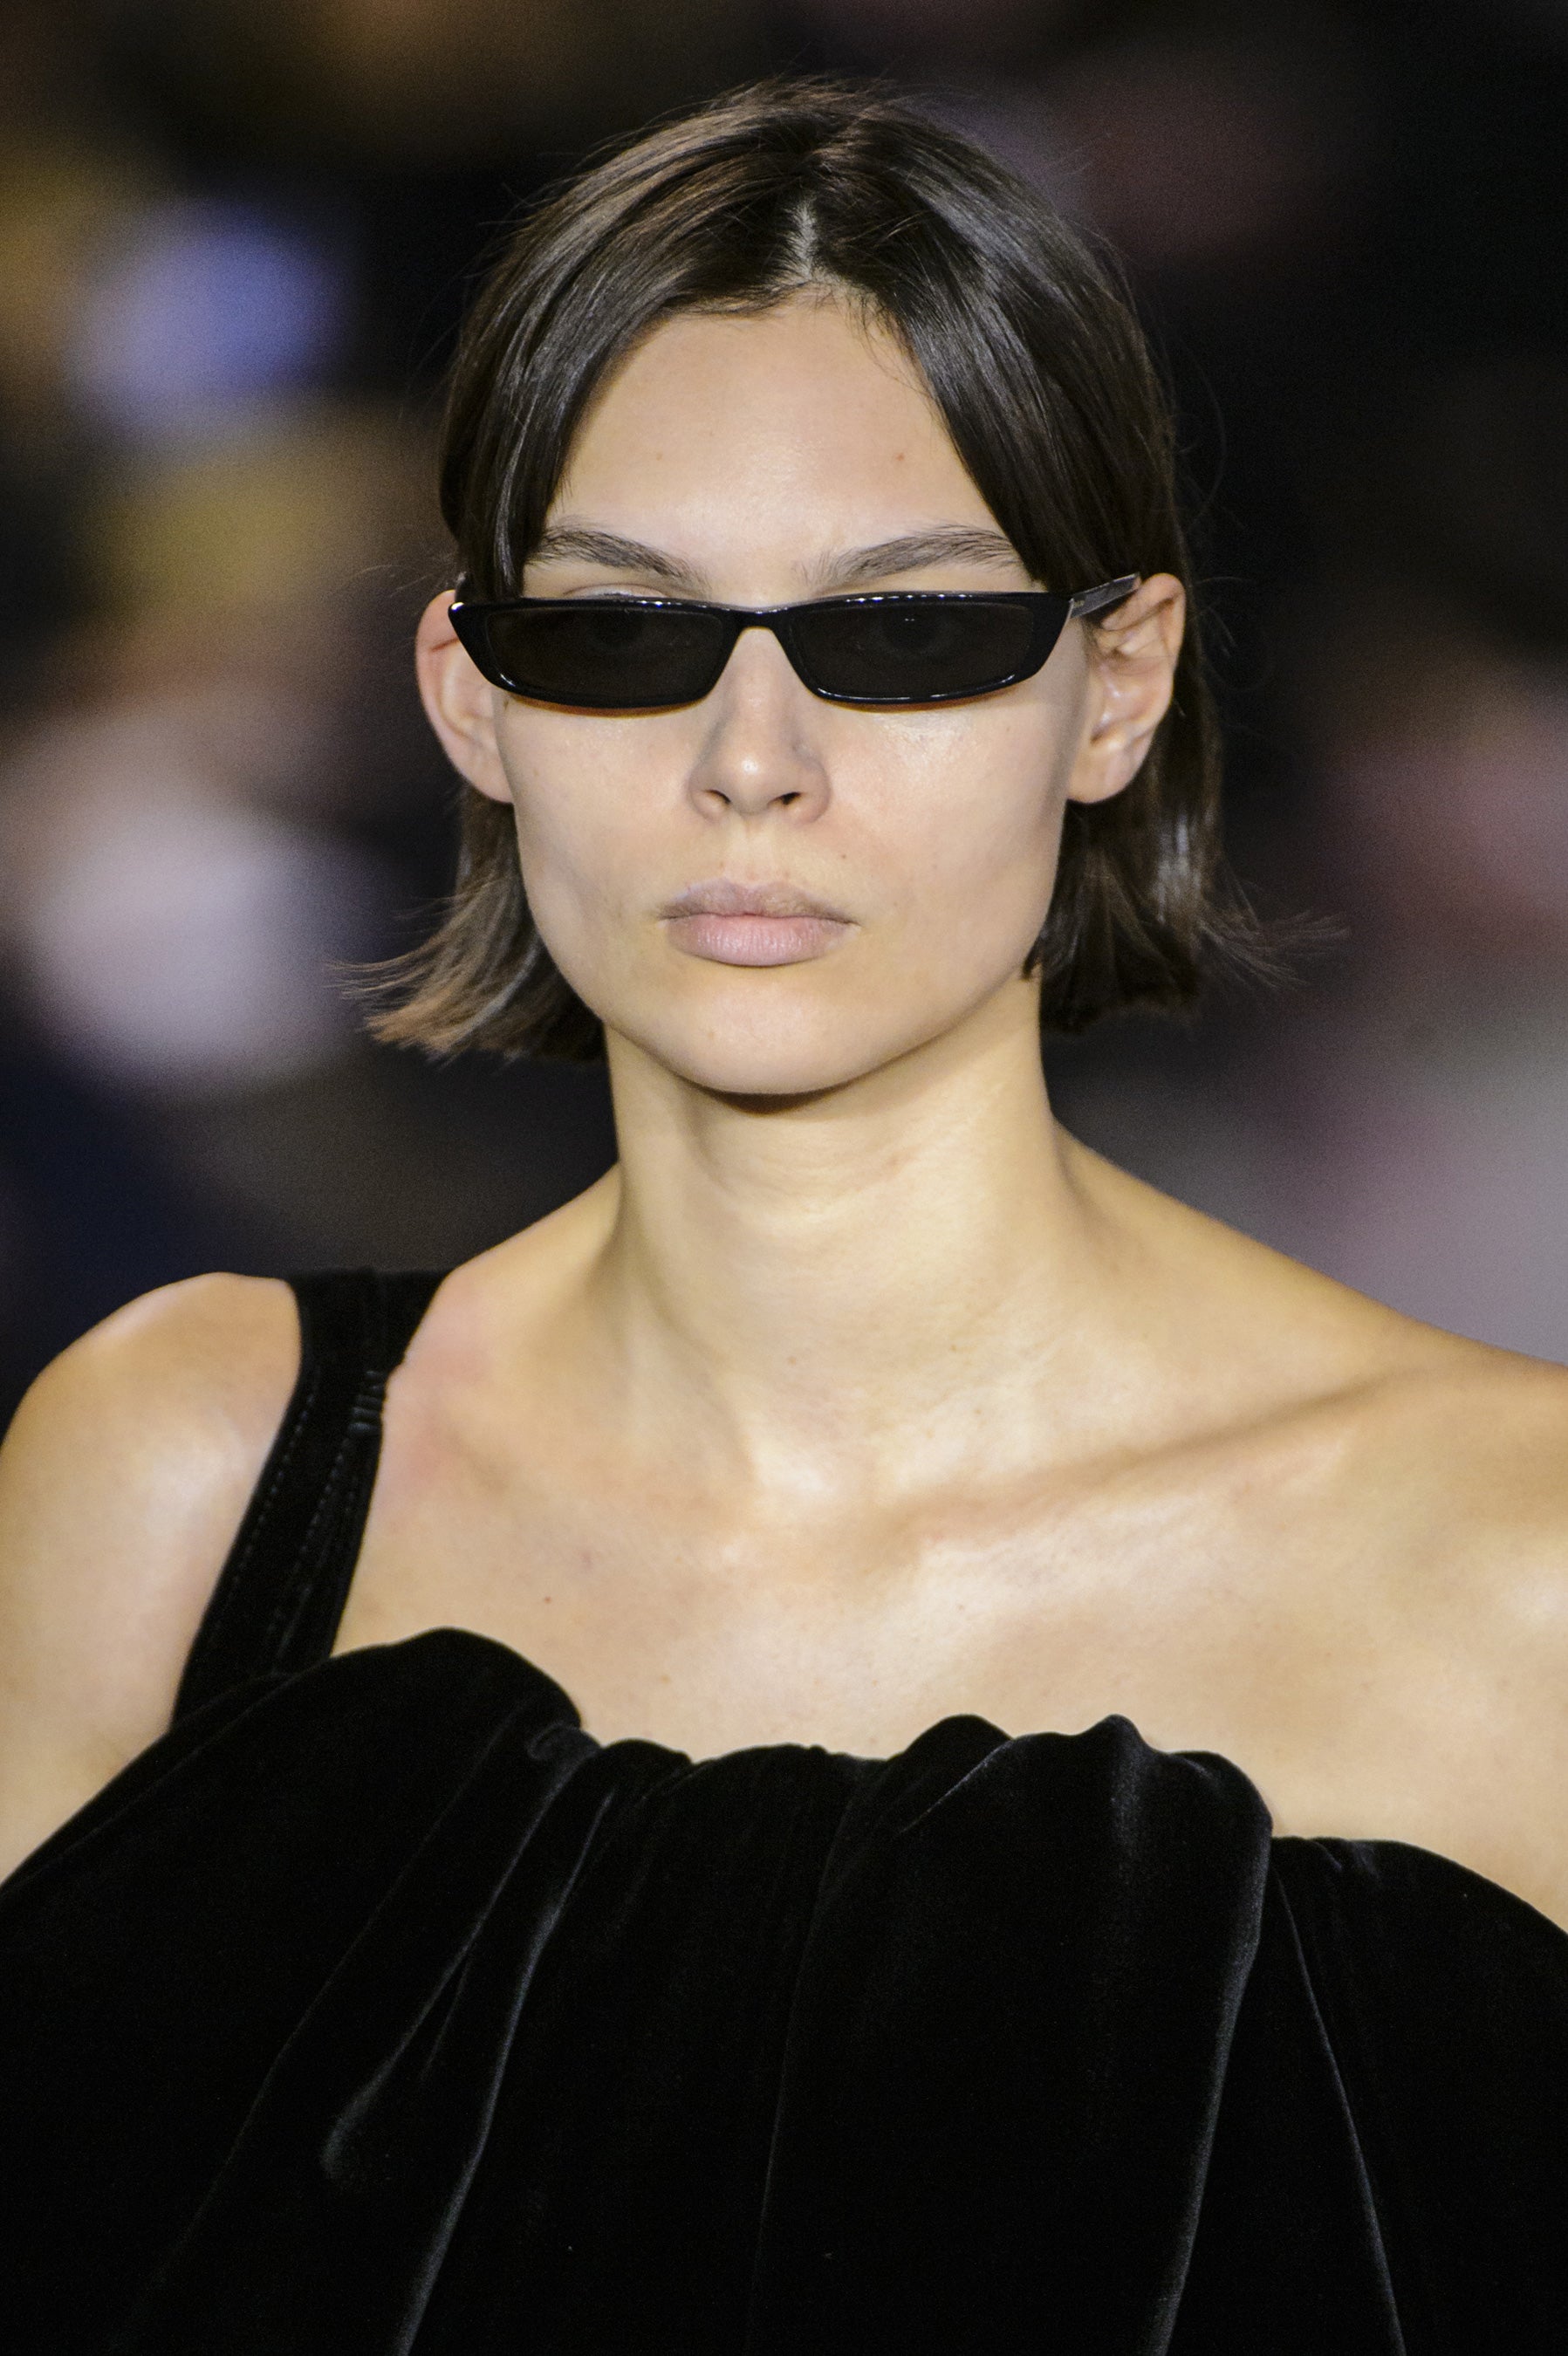 balenciaga cat eye fashion show sunglasses